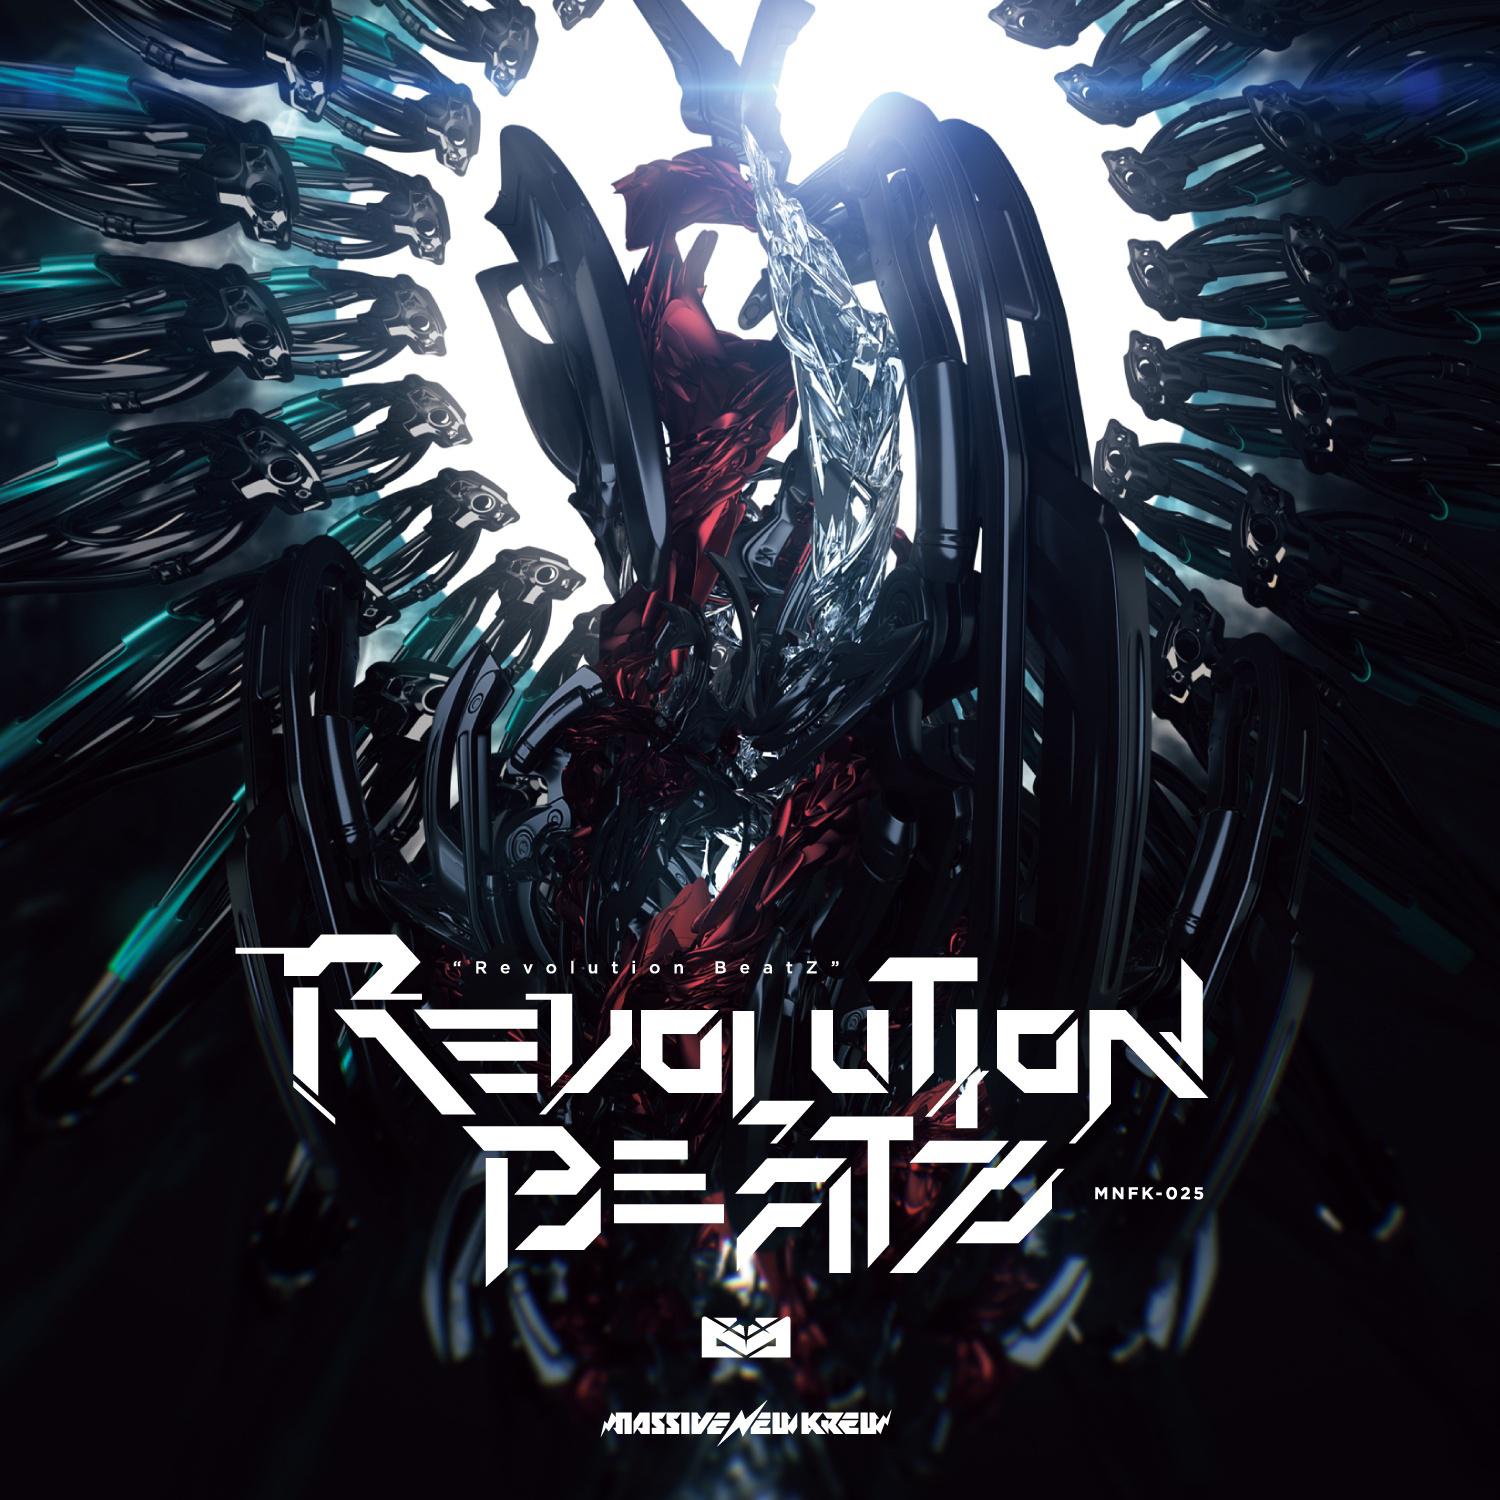 Revoluntion BeatZ专辑